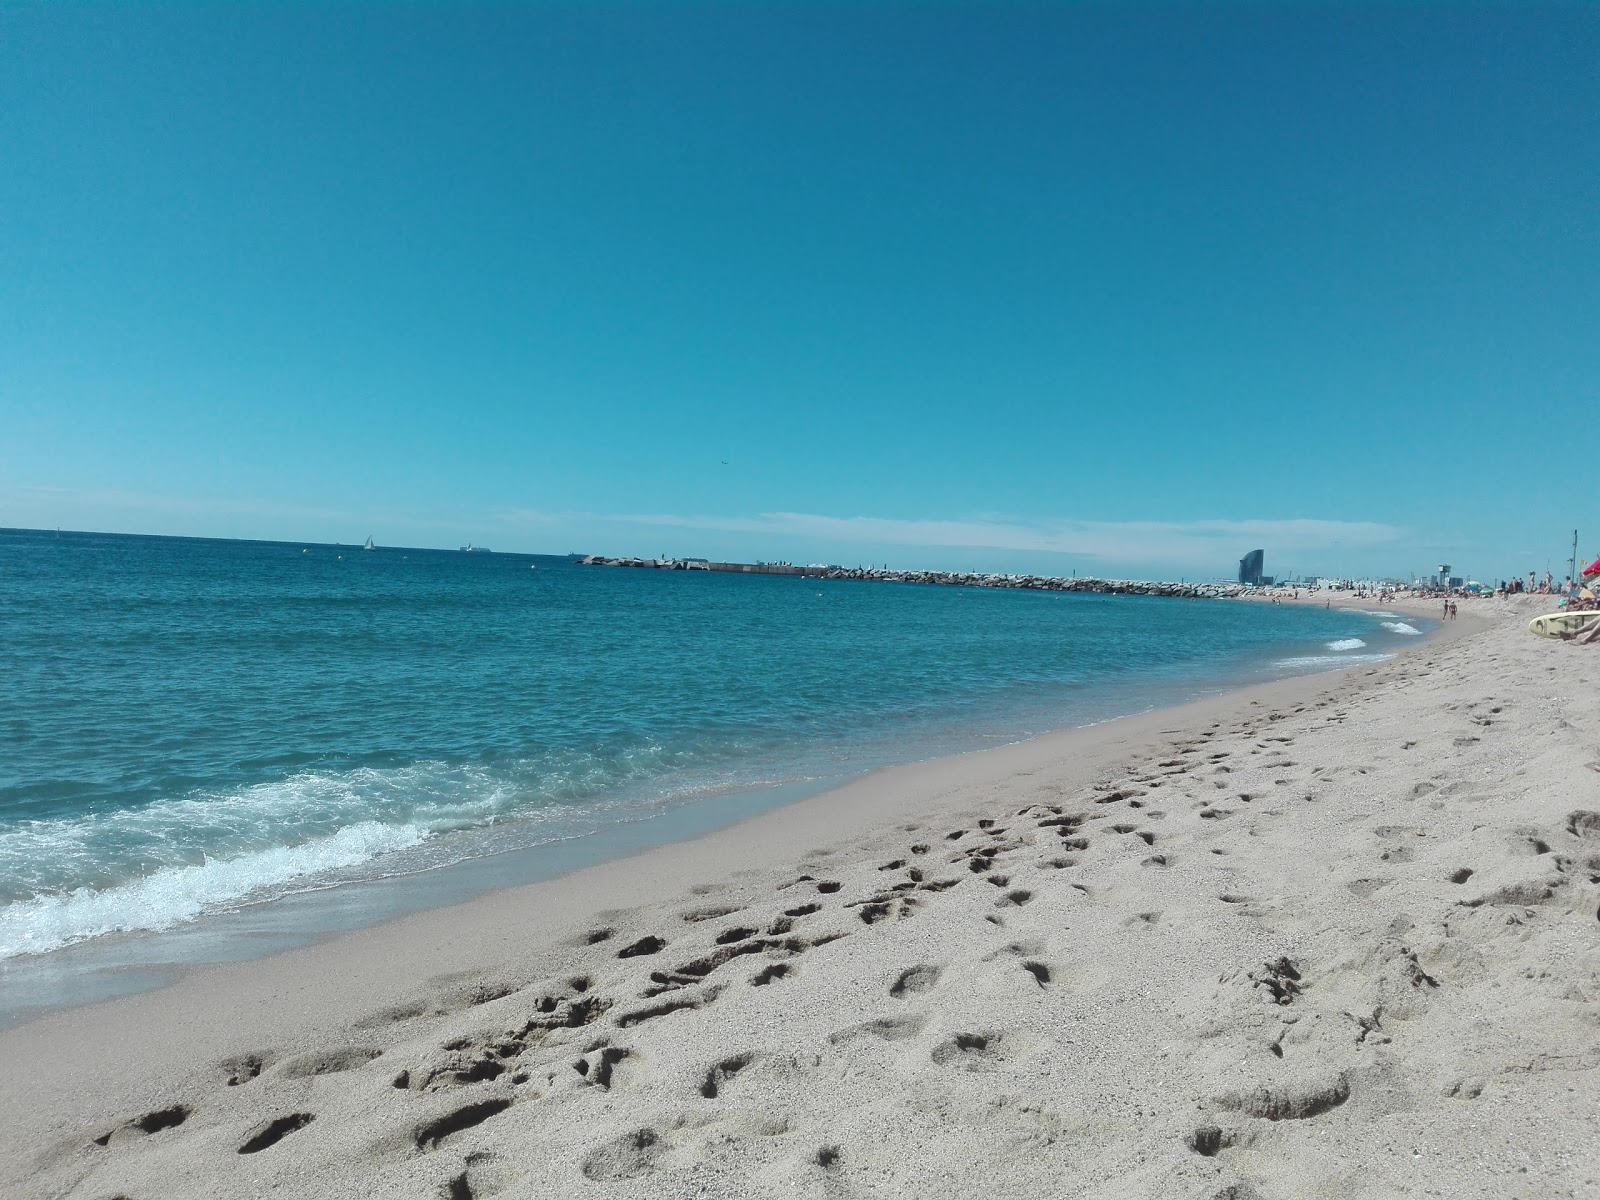 Platja de la Mar Bella'in fotoğrafı parlak ince kum yüzey ile